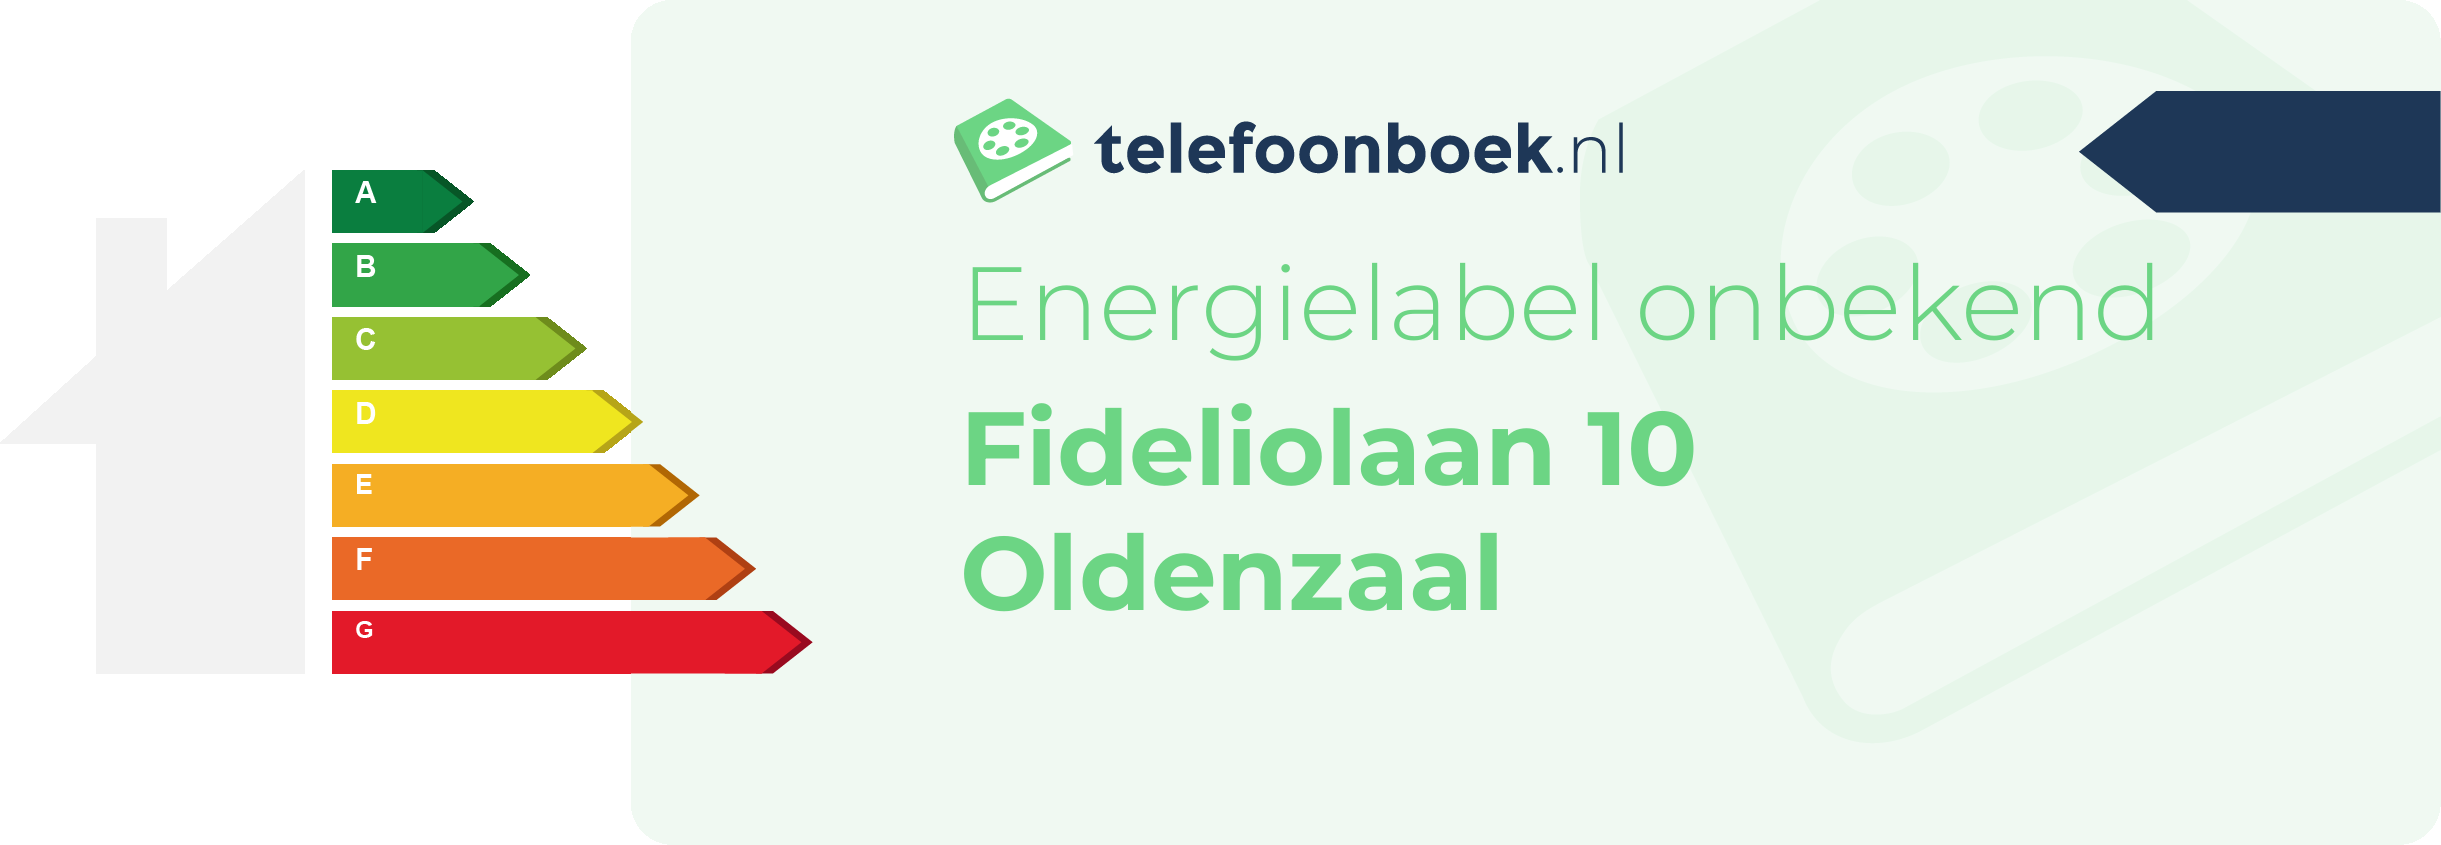 Energielabel Fideliolaan 10 Oldenzaal